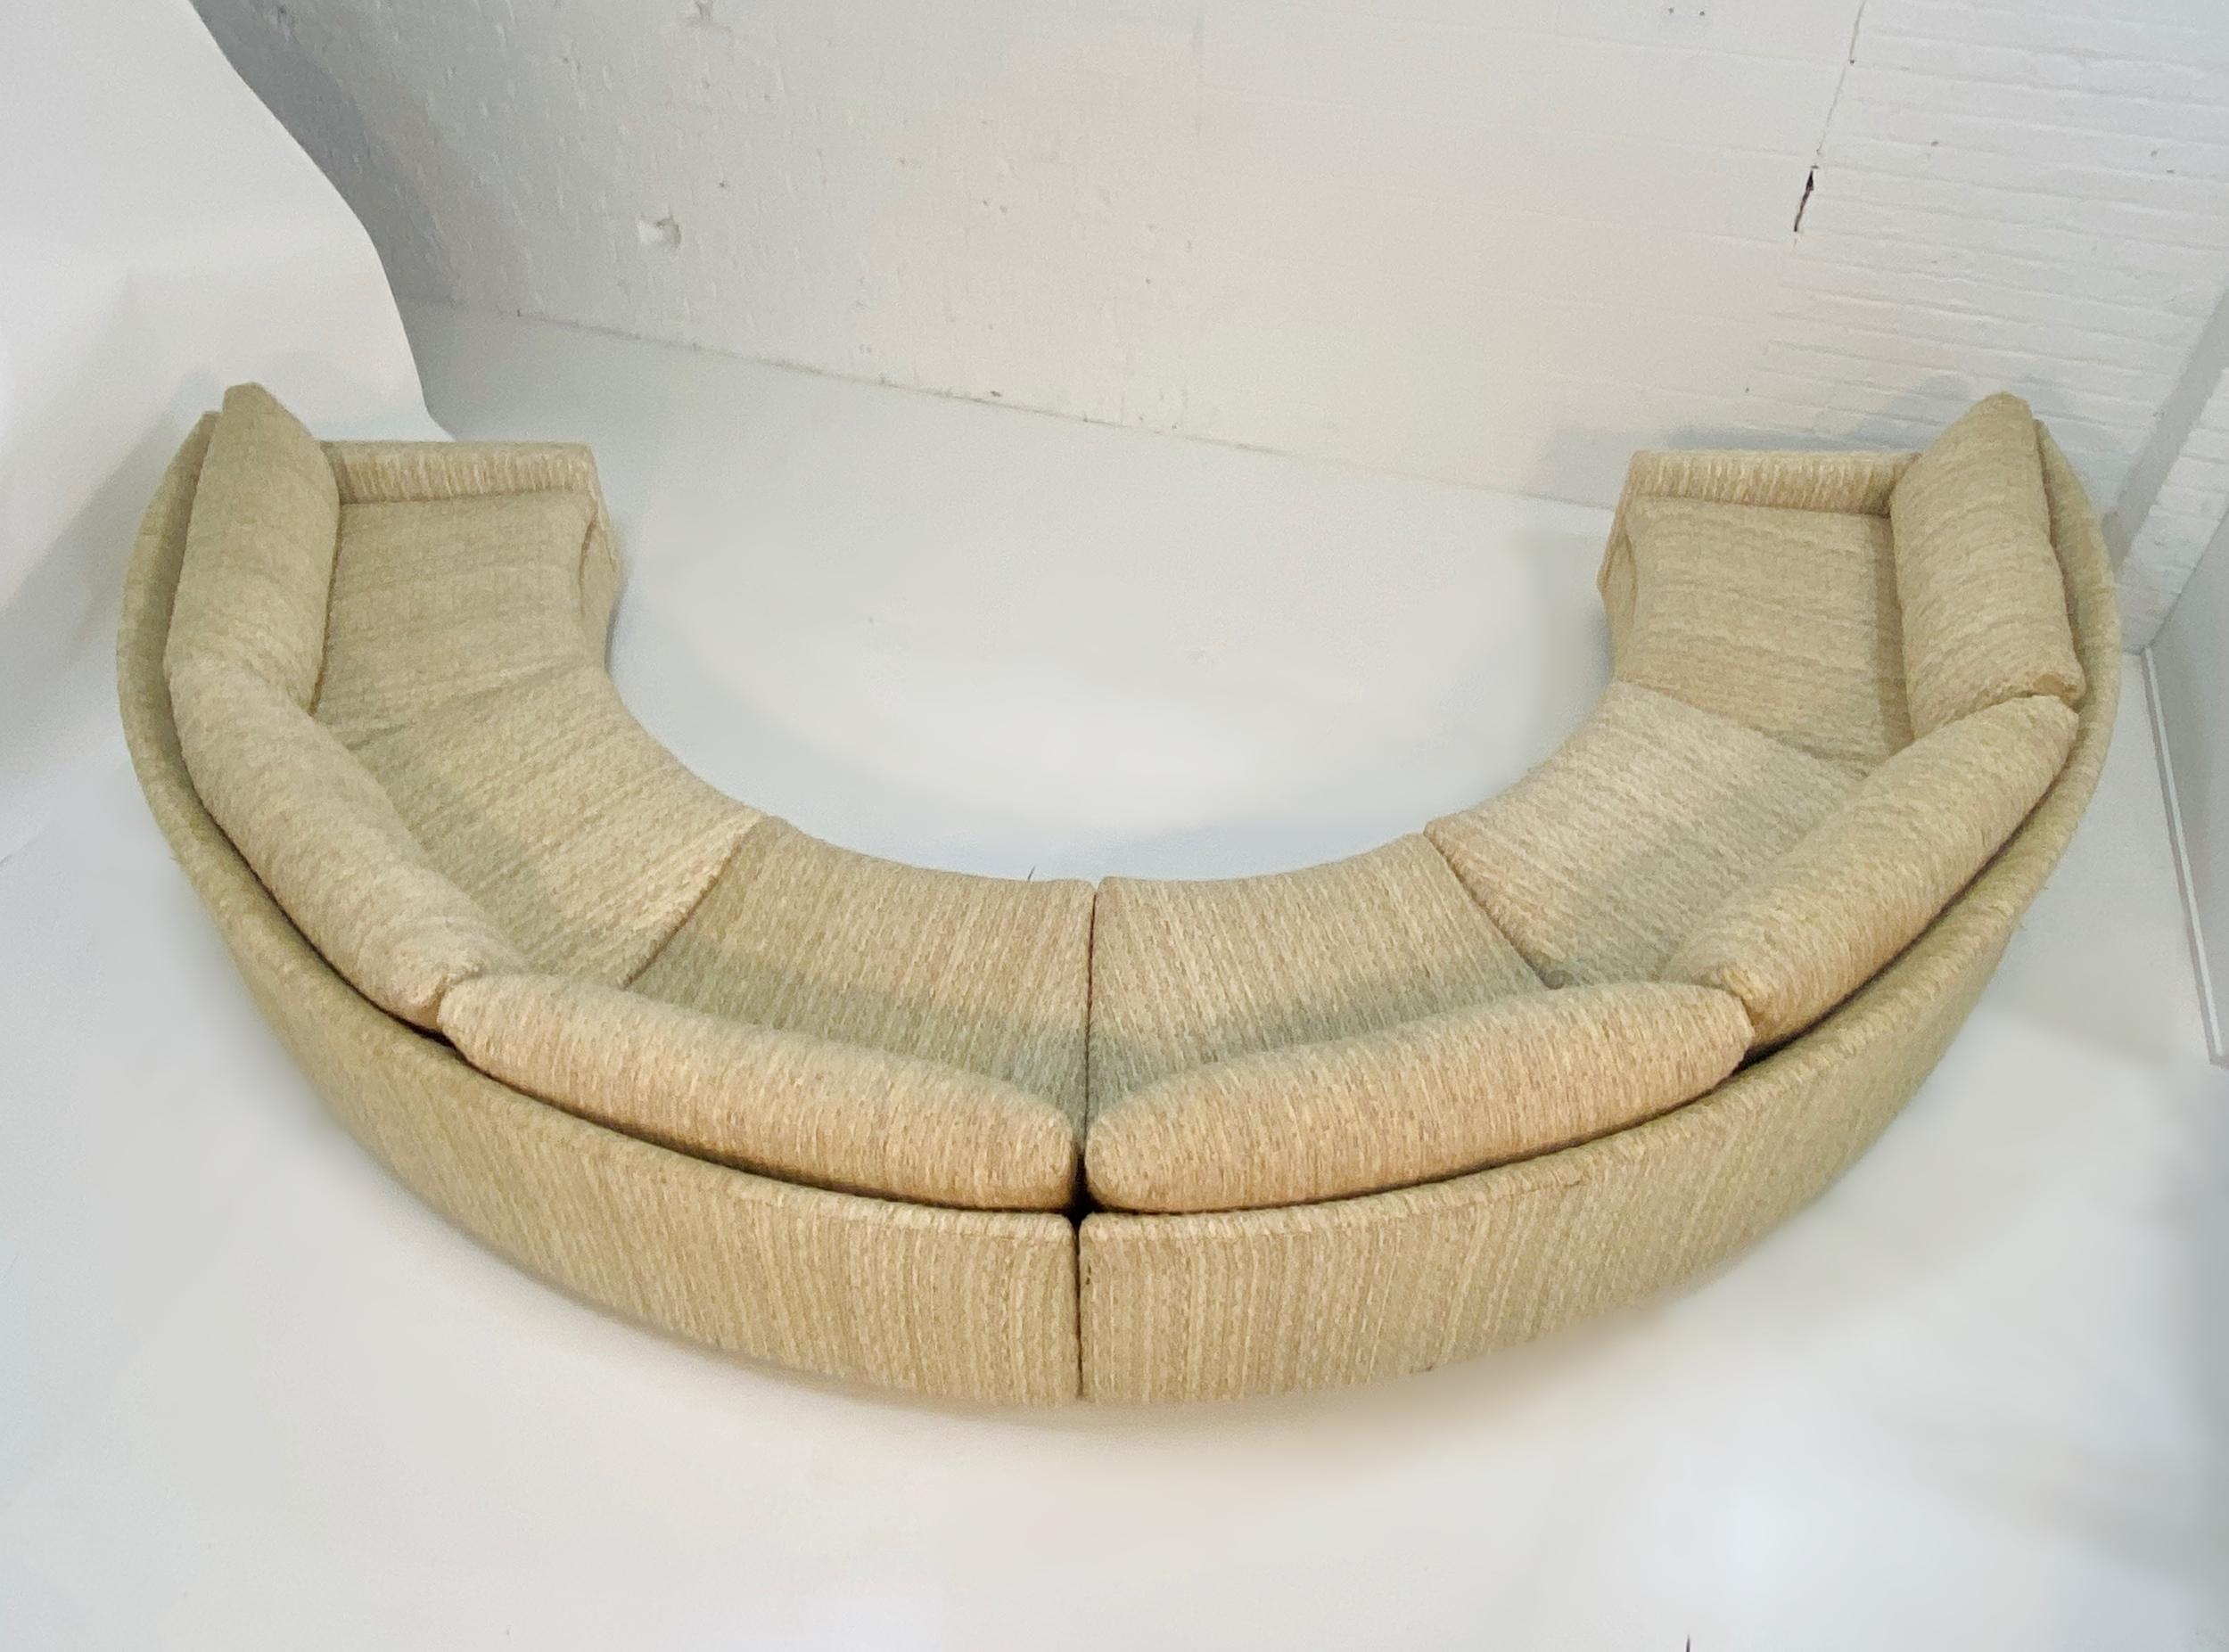 Fabric Milo Baughman Semi-Circular Sofa with Rosewood Bases, 1970